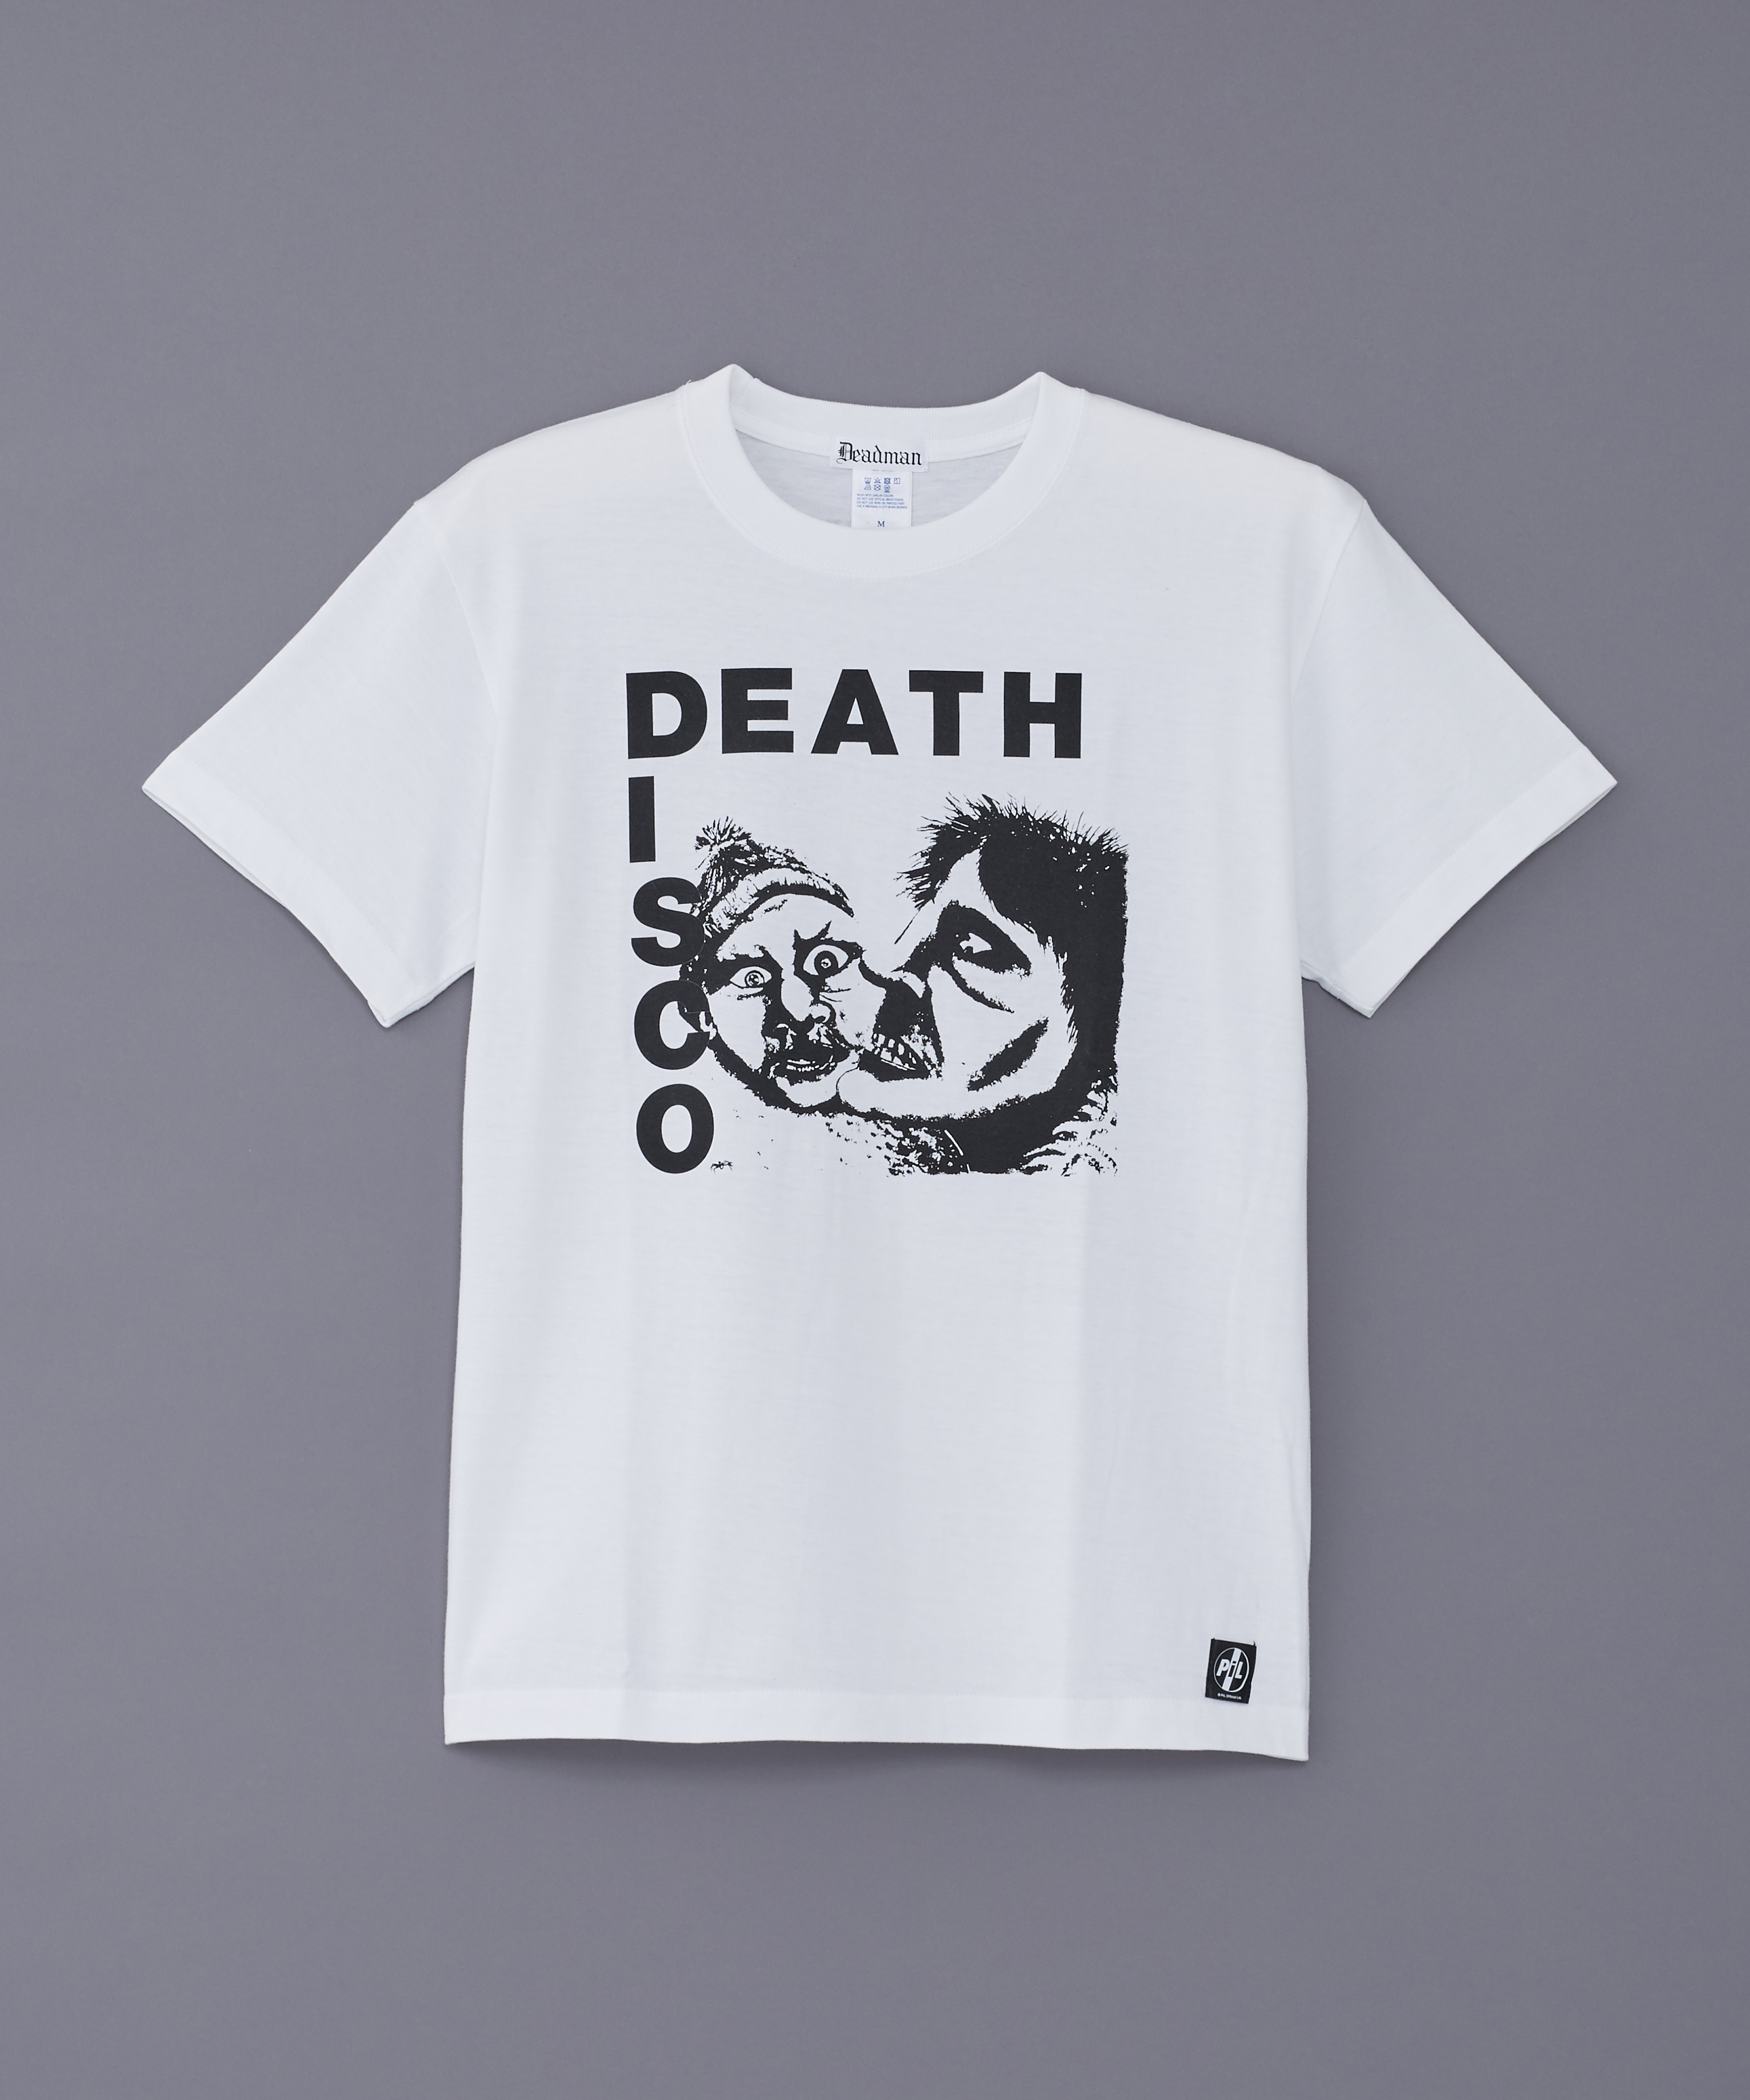 PiL ×deadman DEATH DISCO Tシャツのちょっと深い話。